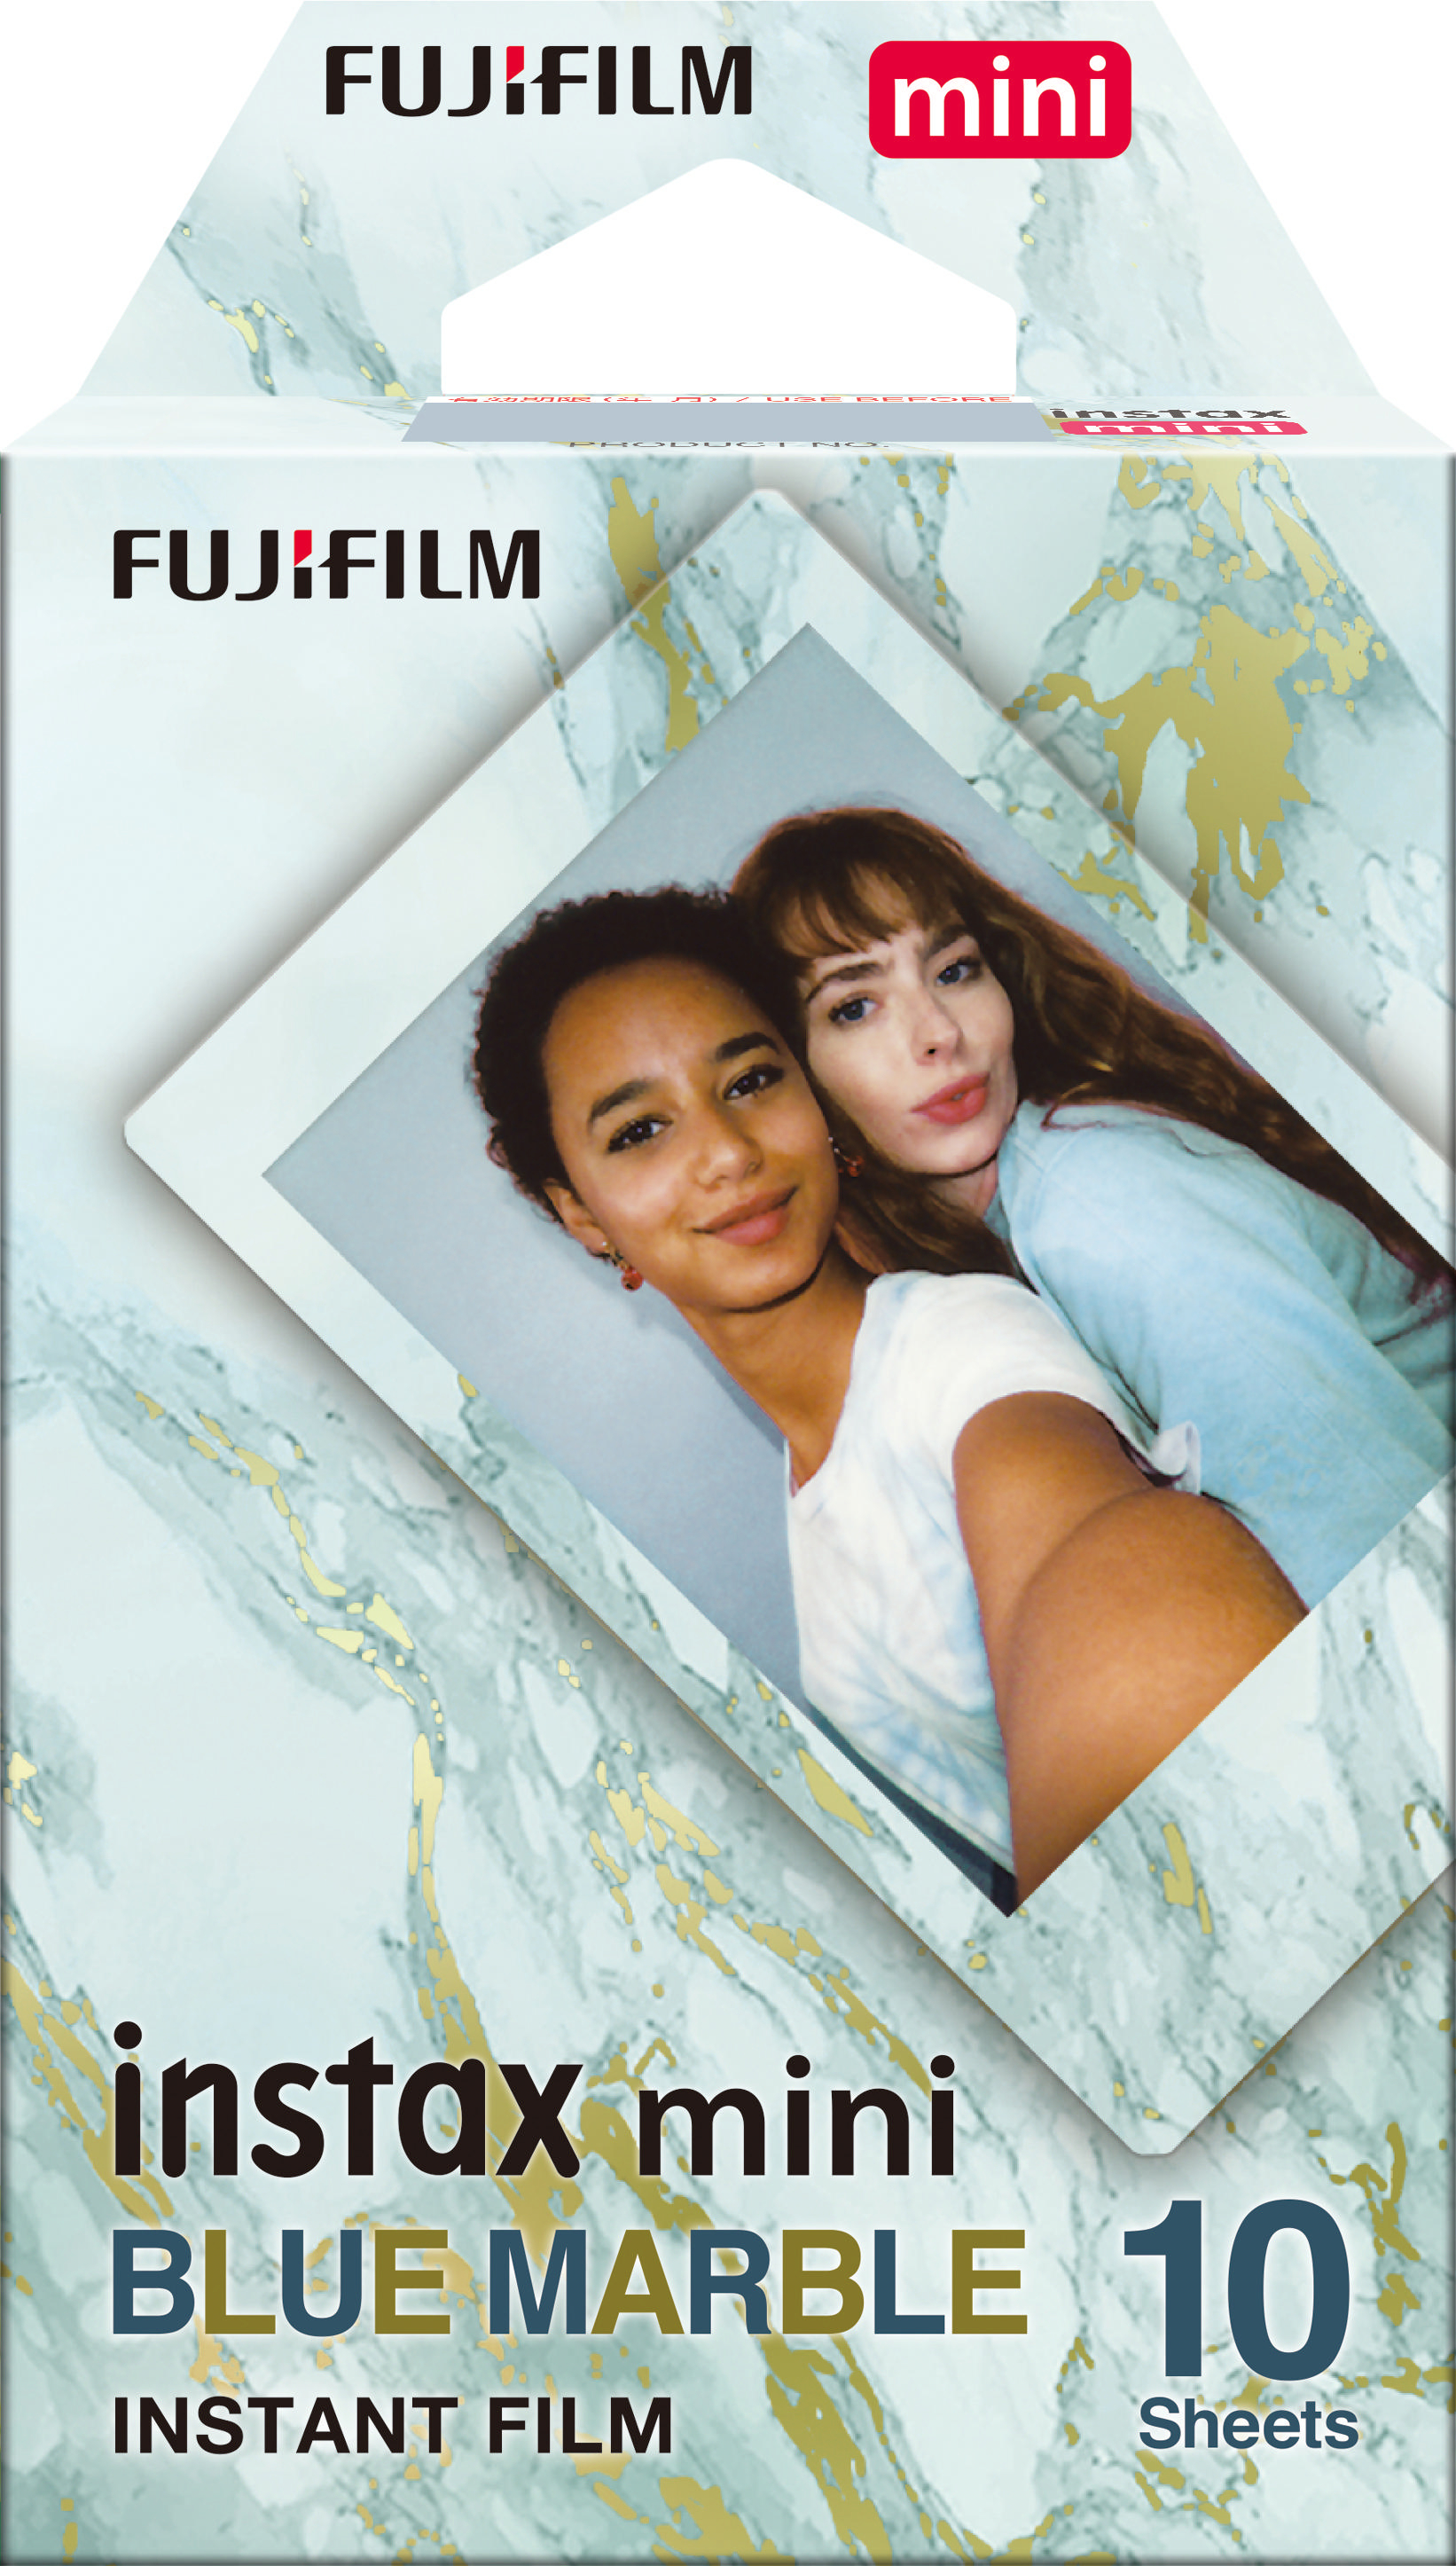 FUJIFILM instax mini Film Blue Sofortbildfilm Marble